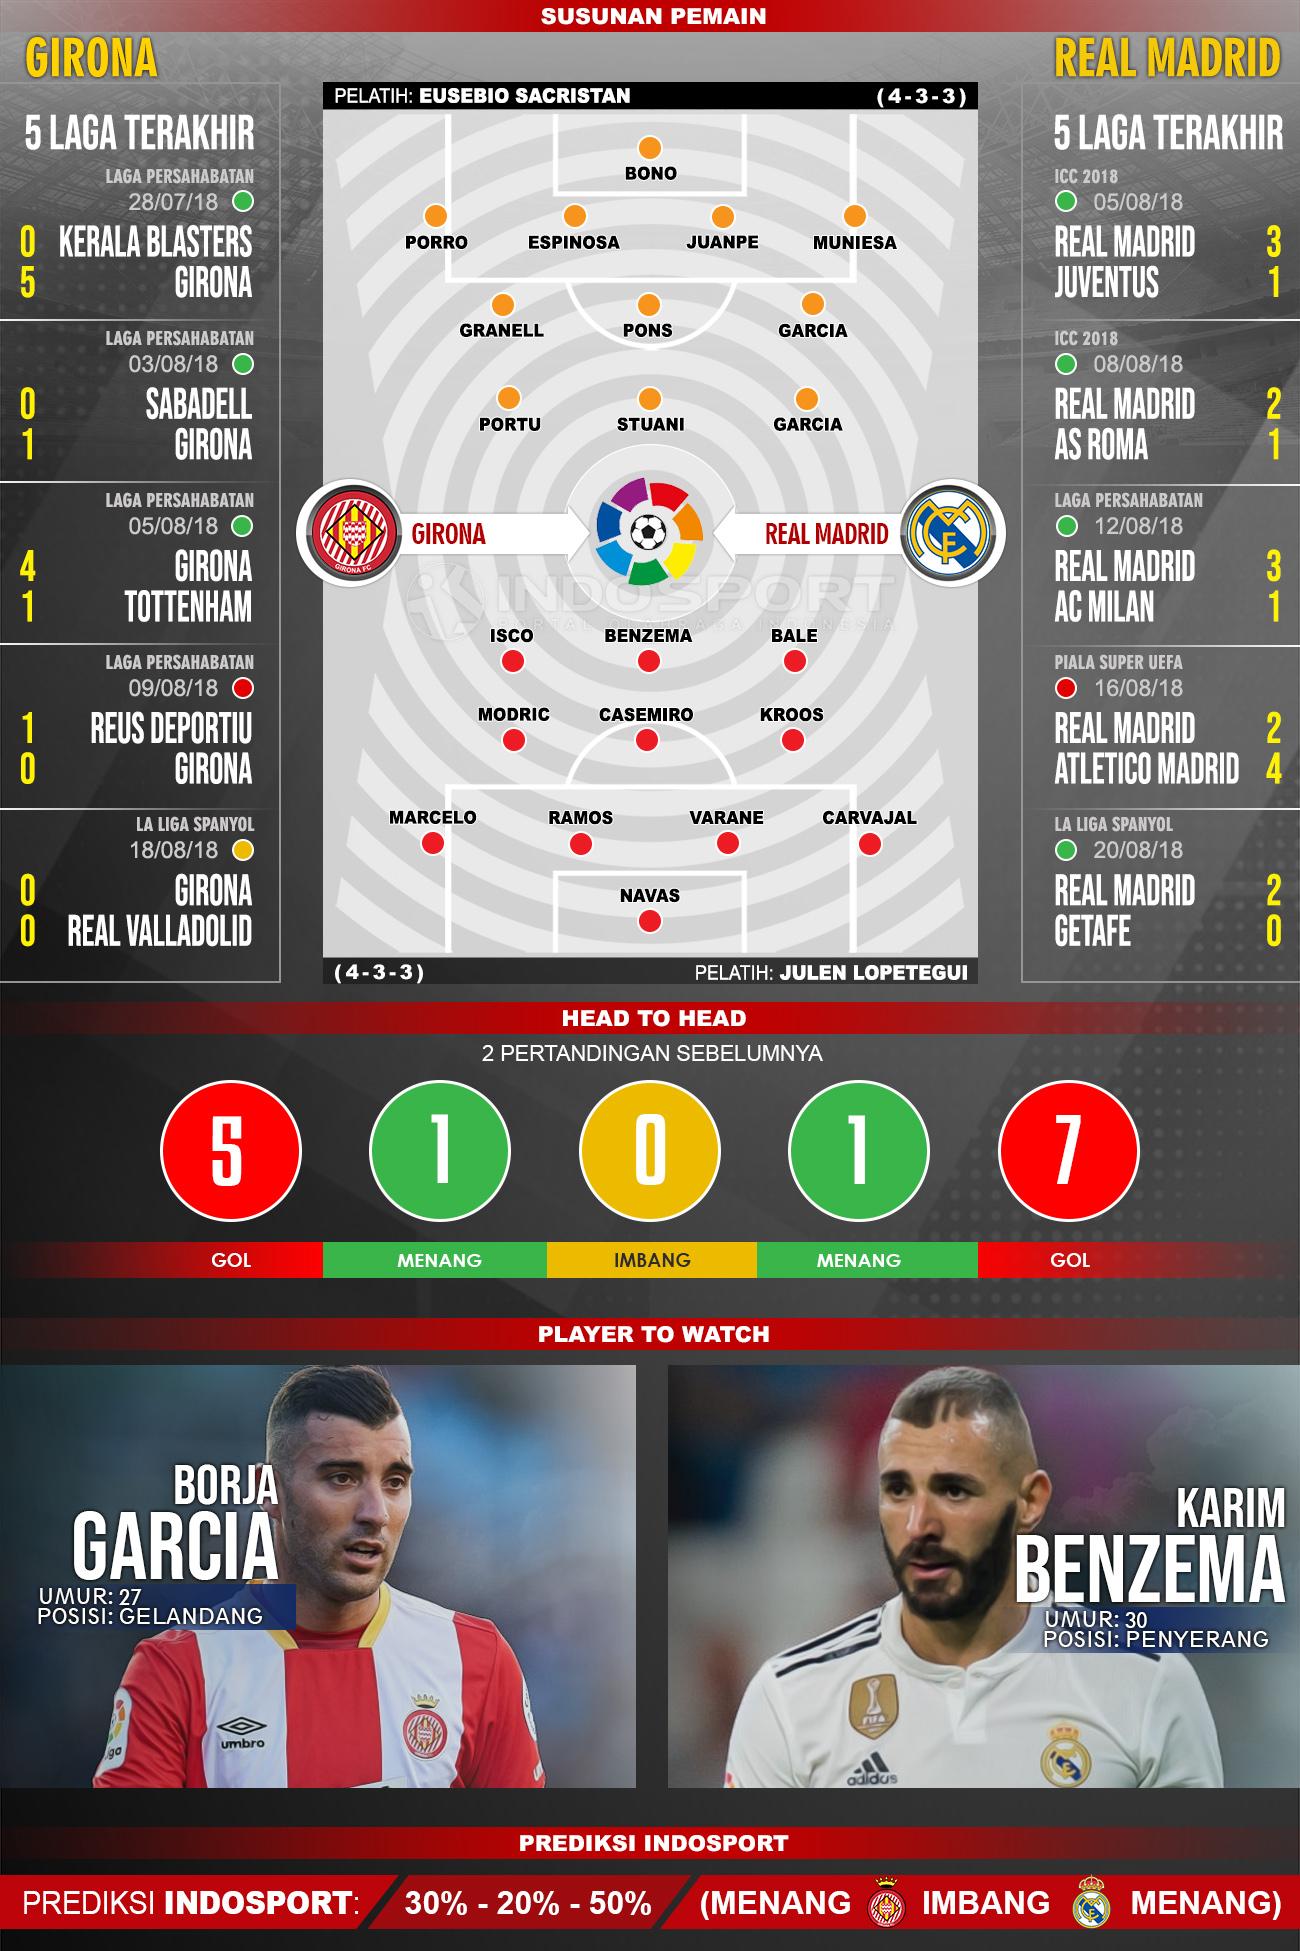 Girona vs Real Madrid (Susunan Pemain - Lima Laga Terakhir - Player to Watch - Prediksi Indosport). Copyright: INDOSPORT